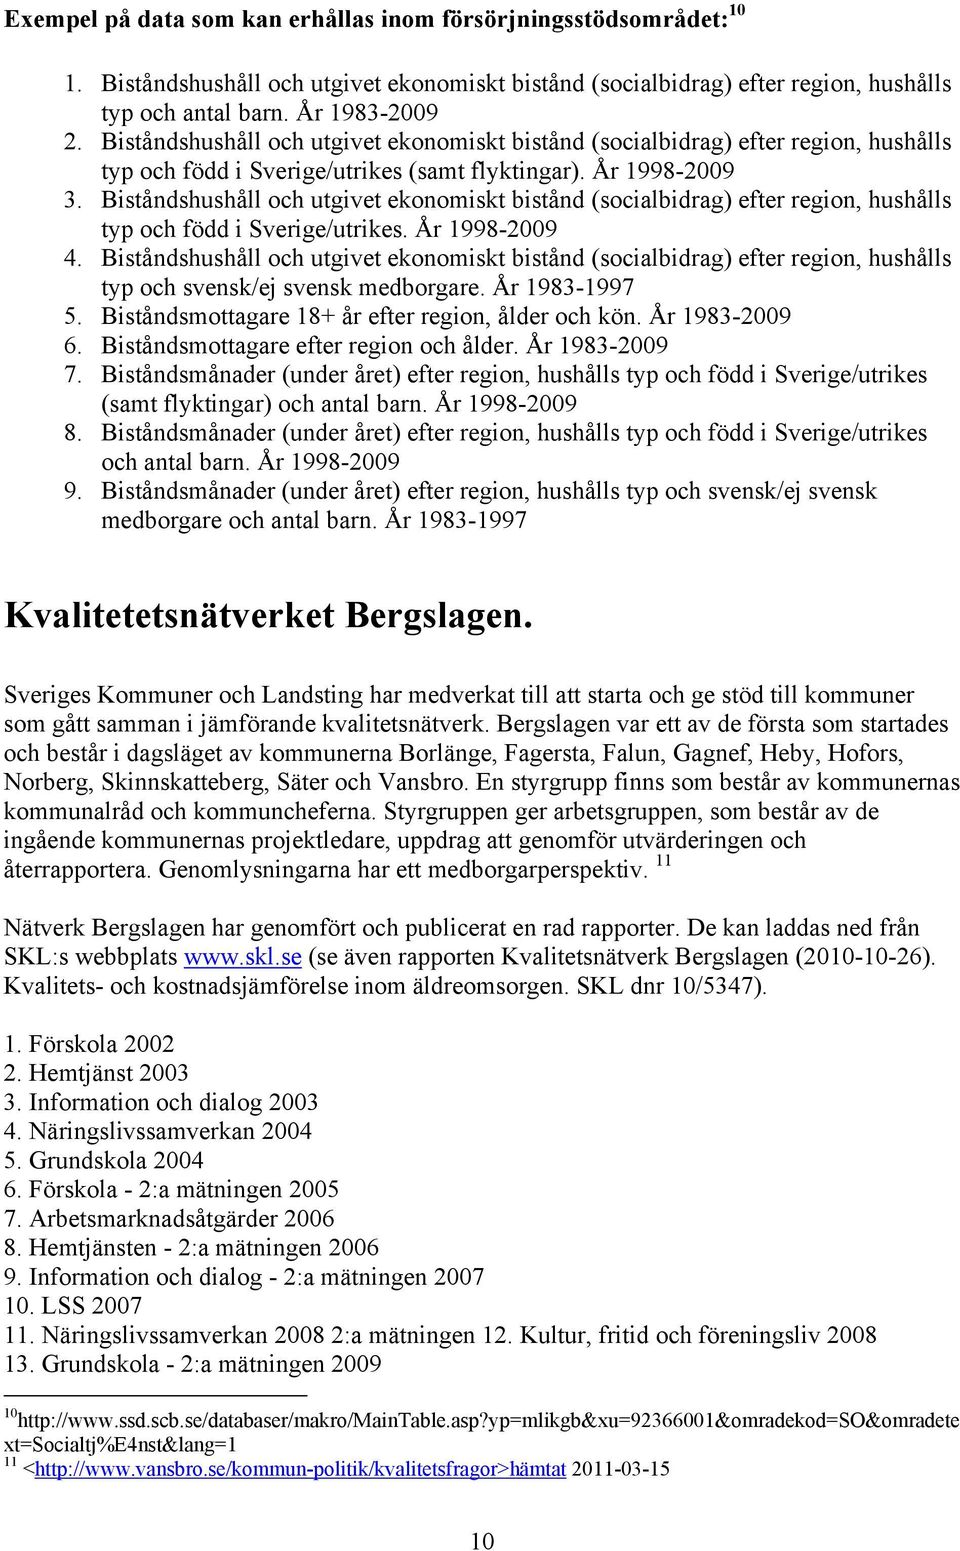 Biståndshushåll och utgivet ekonomiskt bistånd (socialbidrag) efter region, hushålls typ och född i Sverige/utrikes. År 1998-2009 4.